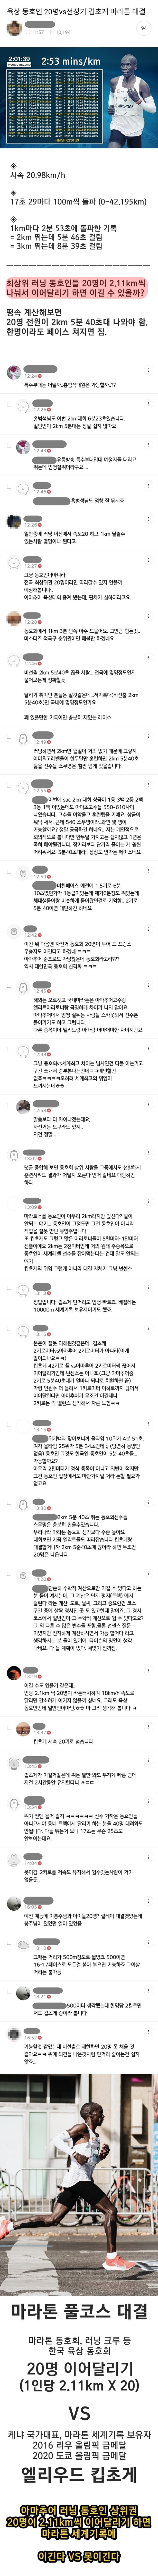 한국 러닝 동호회 불타게했던 논쟁..JPG